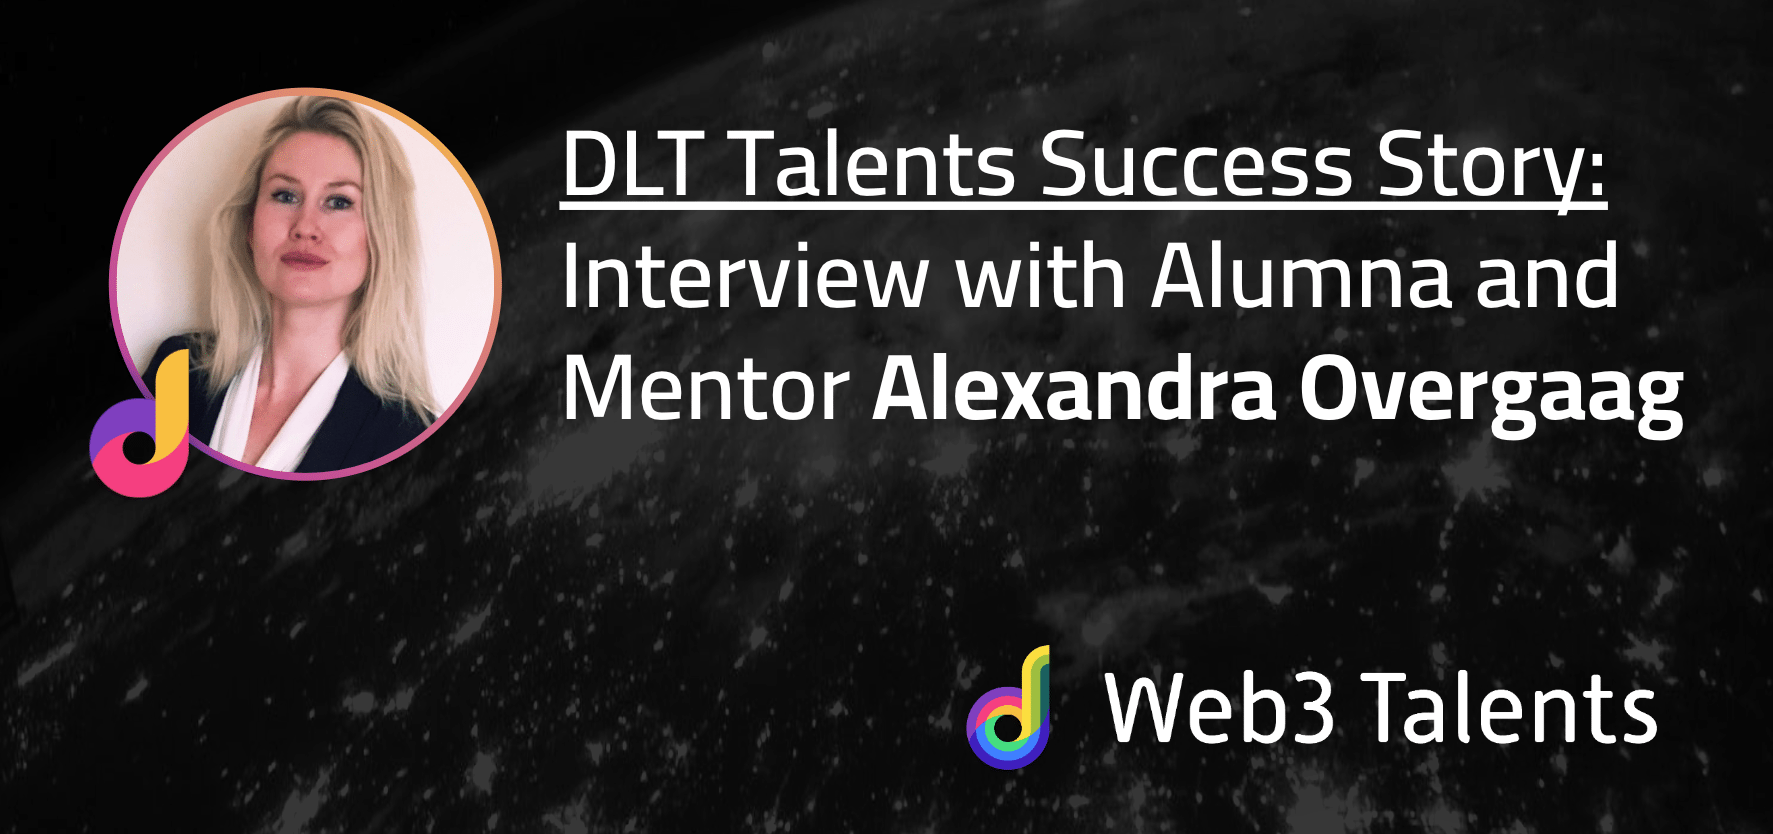 DLT Talents Success Story: Alexandra Overgaag